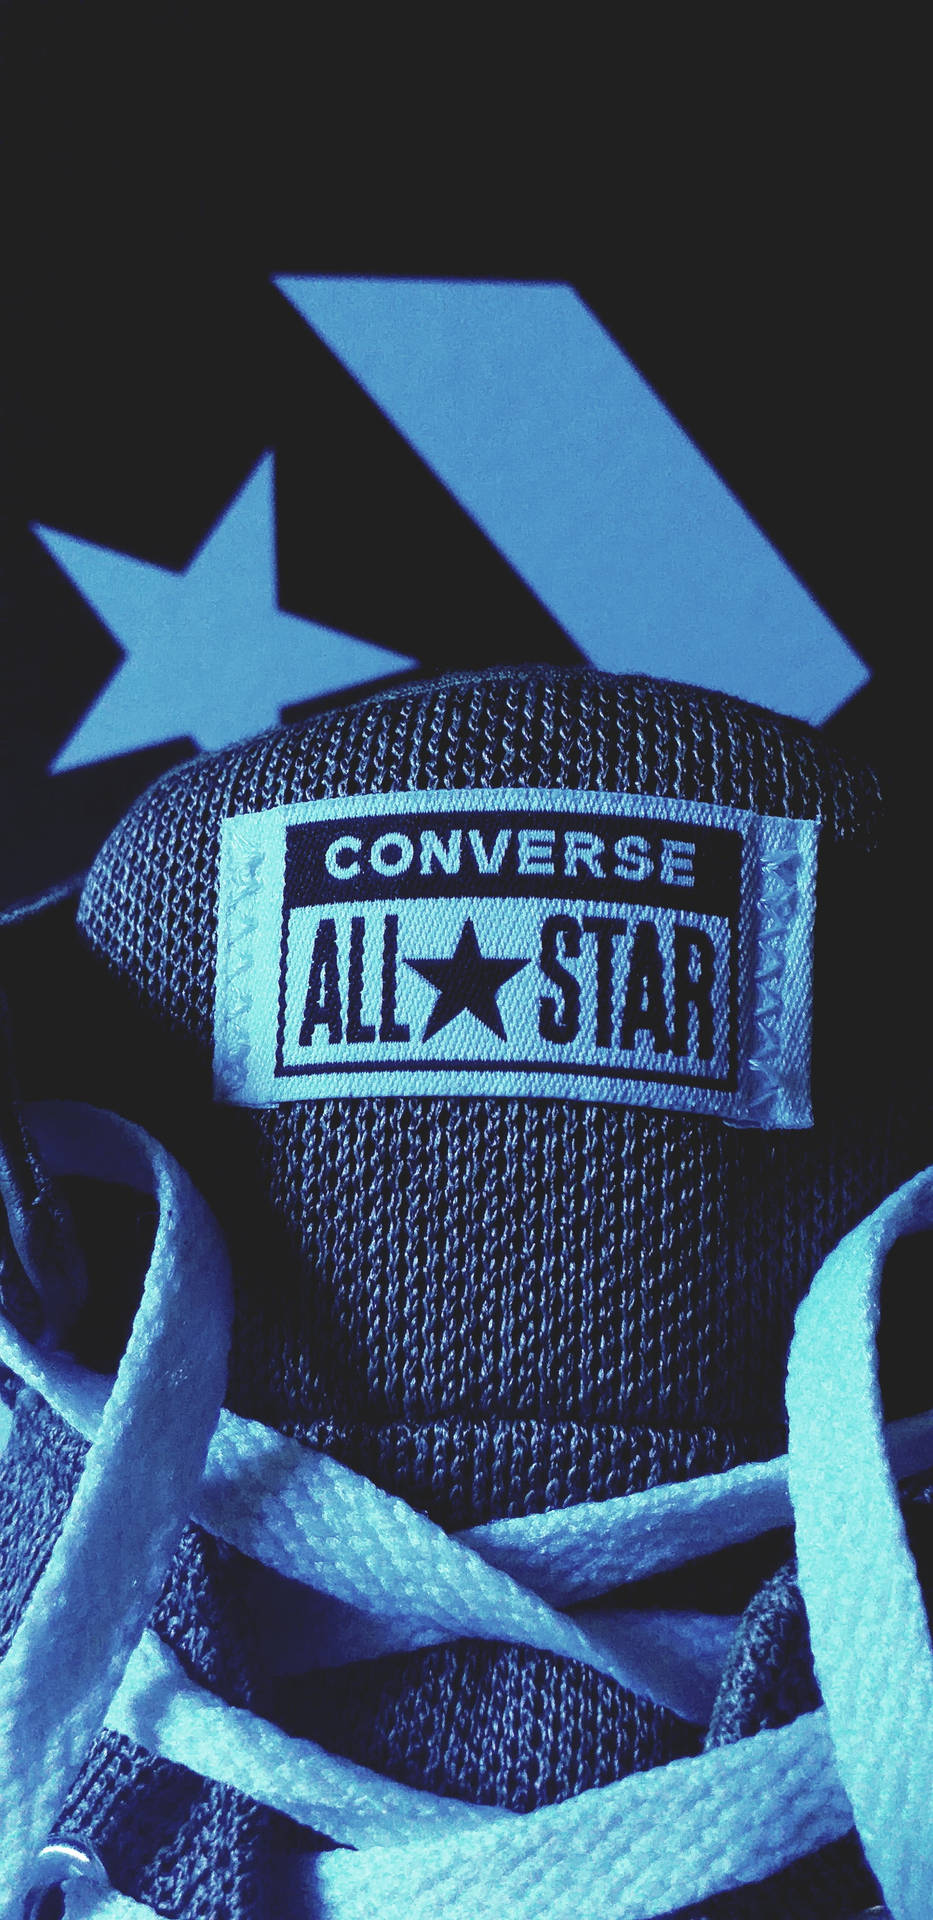 Blåall-star Converse-logotyp Wallpaper